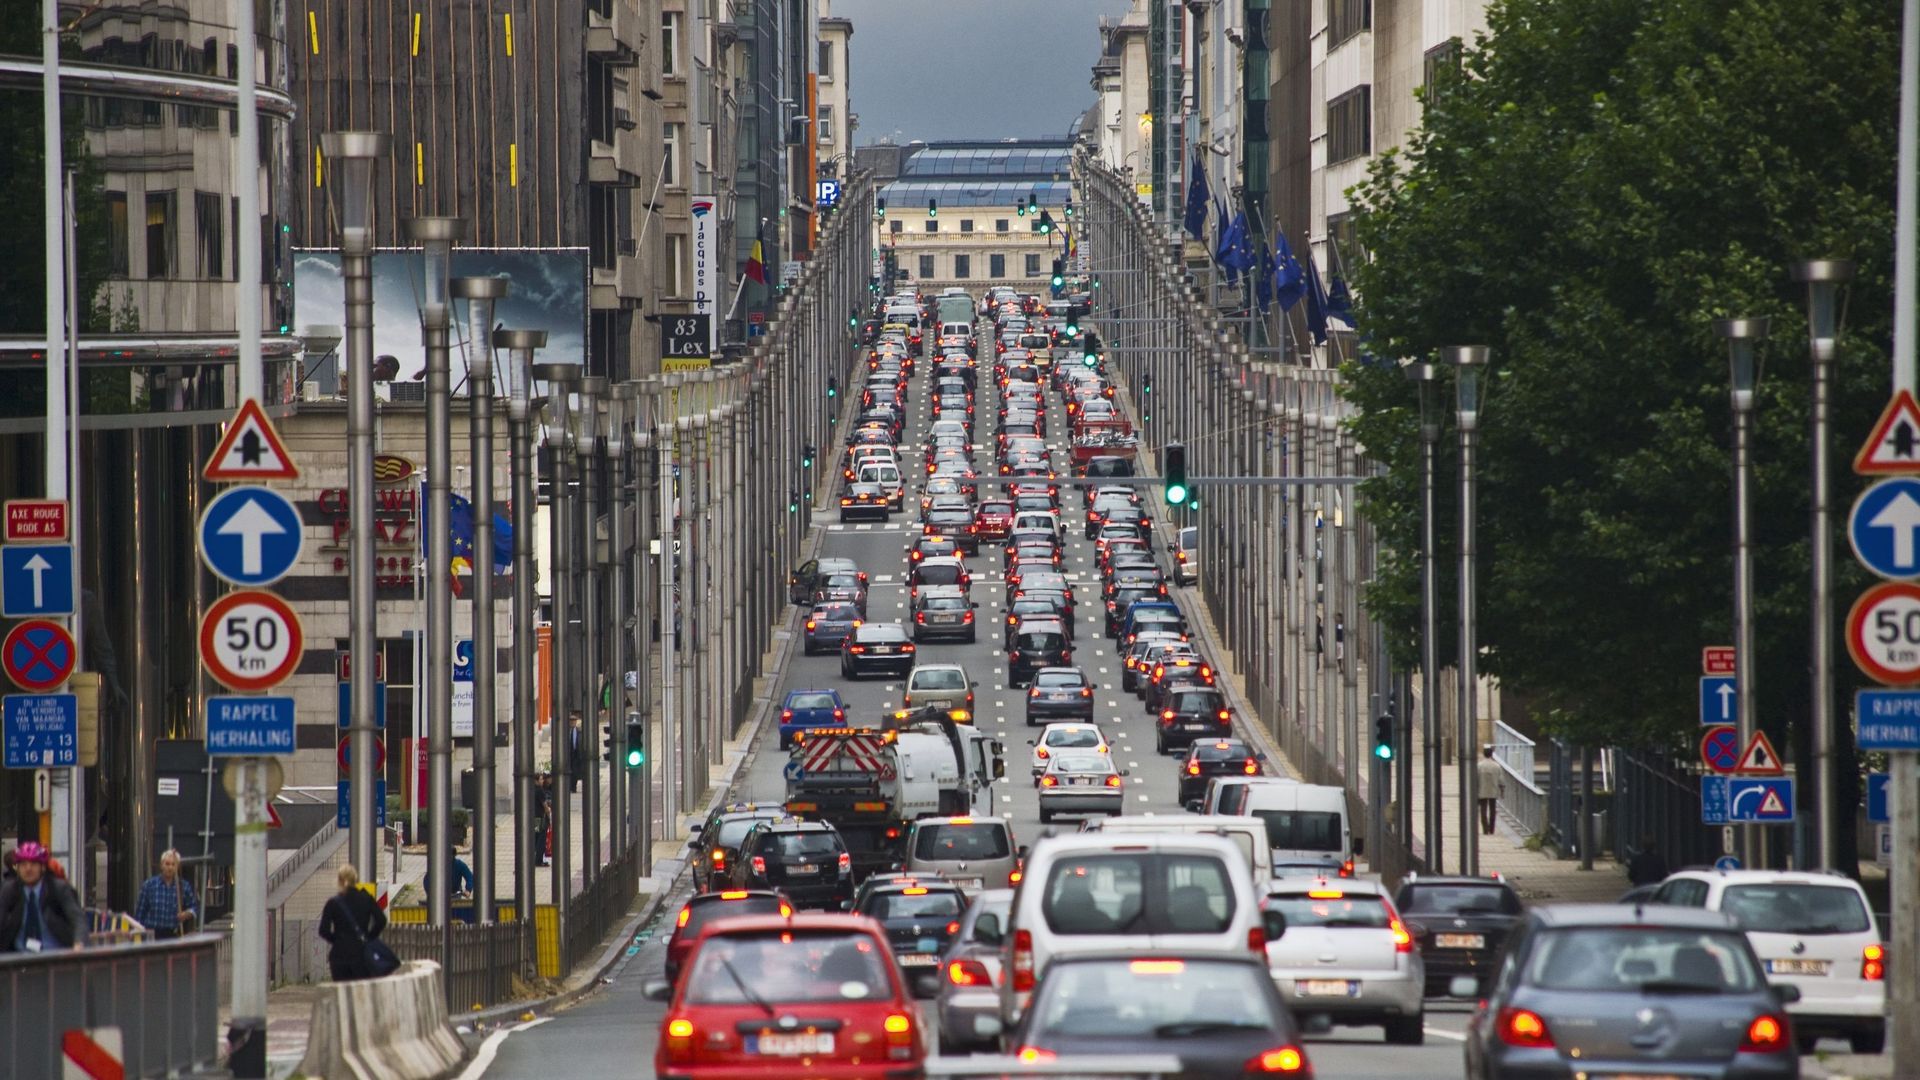 La circulation est pratiquement à l’arrêt sur la Rue de la Loi suite à cette visite d’État suisse.